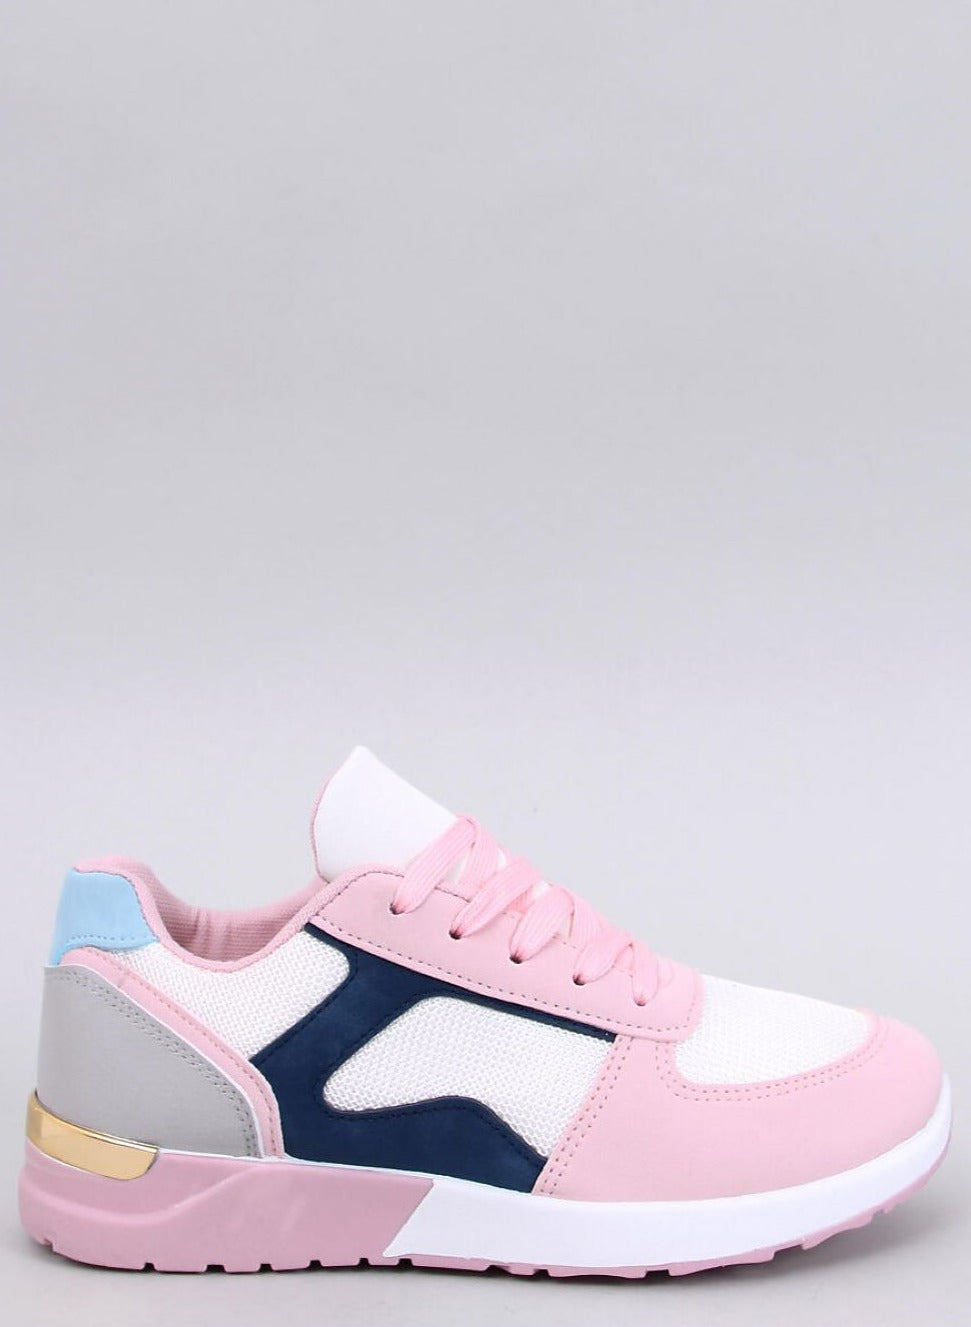 TEEK - Blue Pink Pedaled Sneakers SHOES TEEK MH 6  